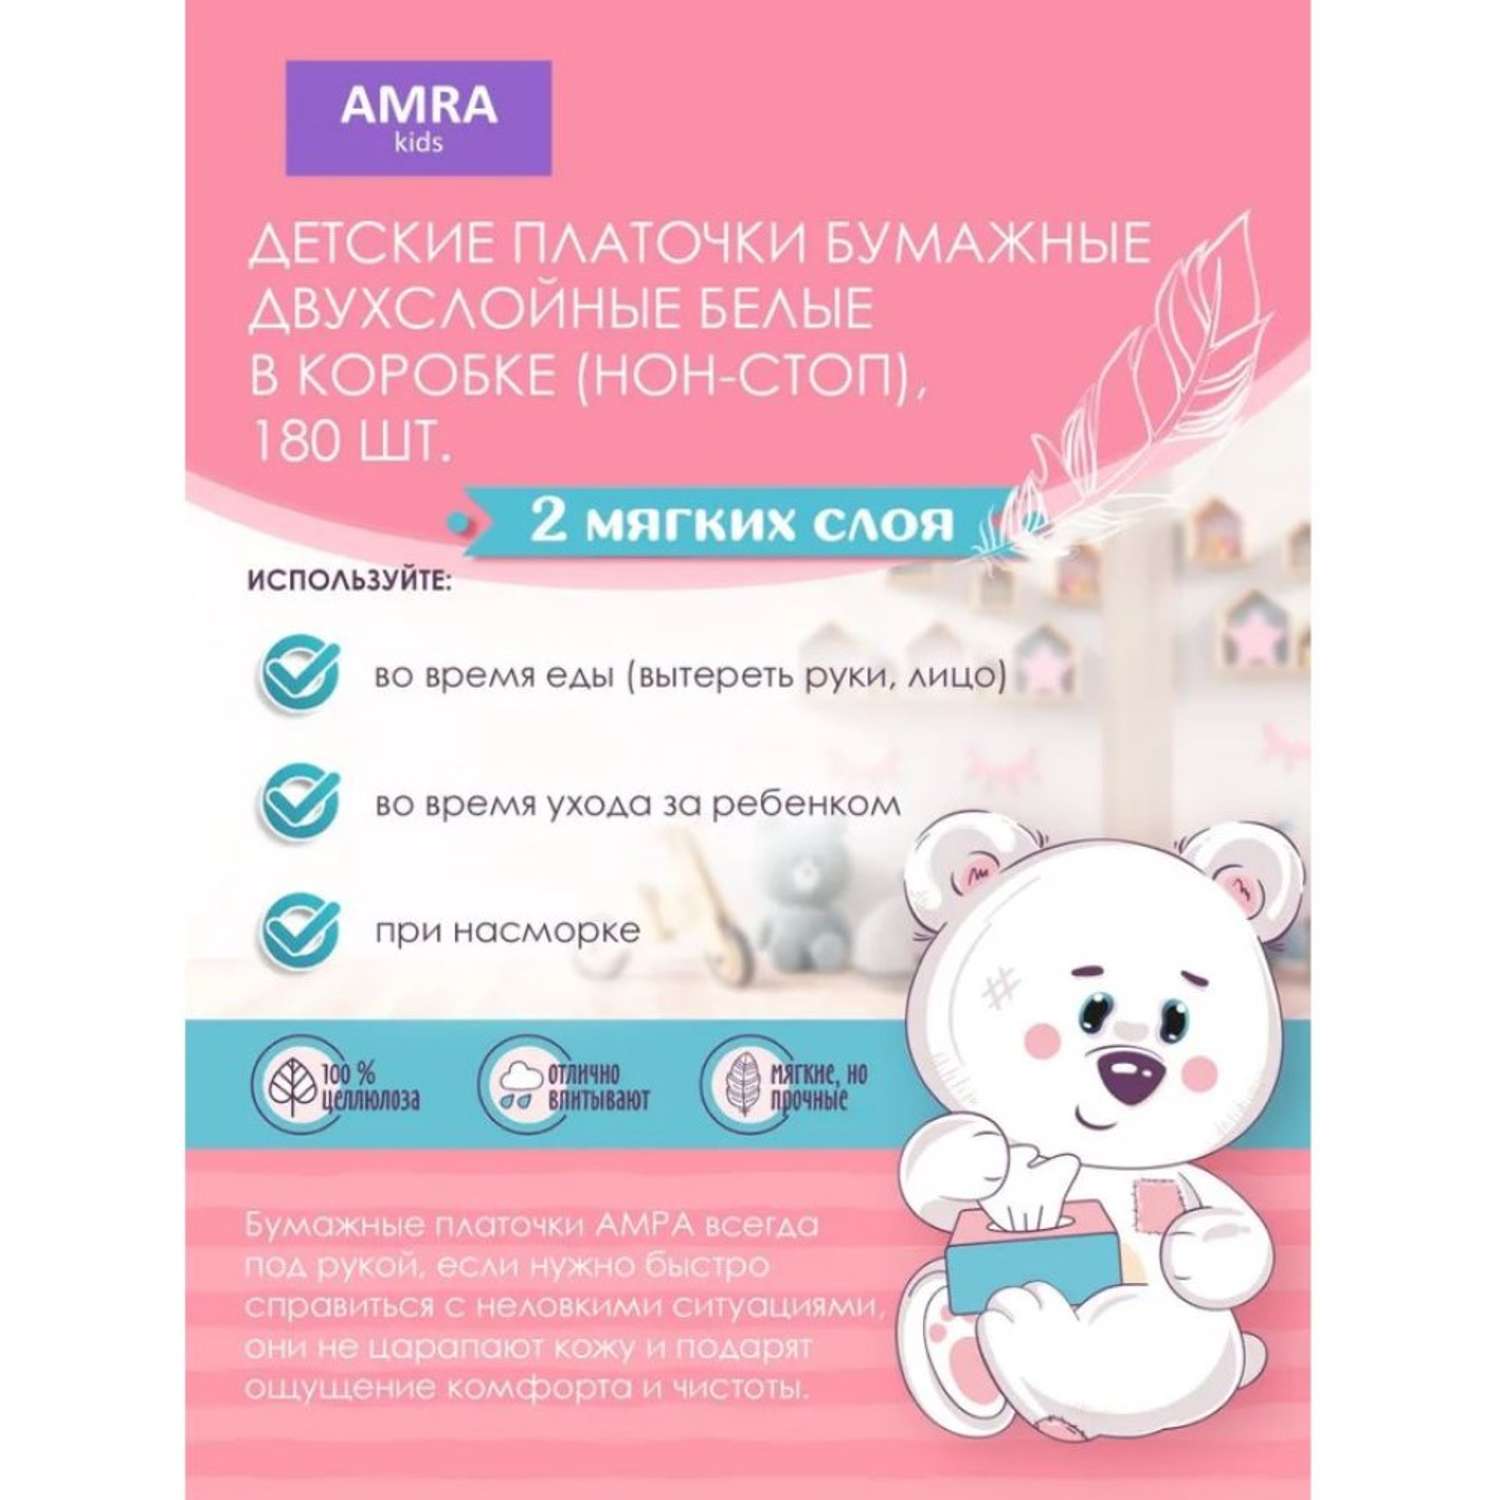 Платочки бумажные Amra детские двухслойные белые в коробке (нон-стоп) 180штХ2 - фото 2